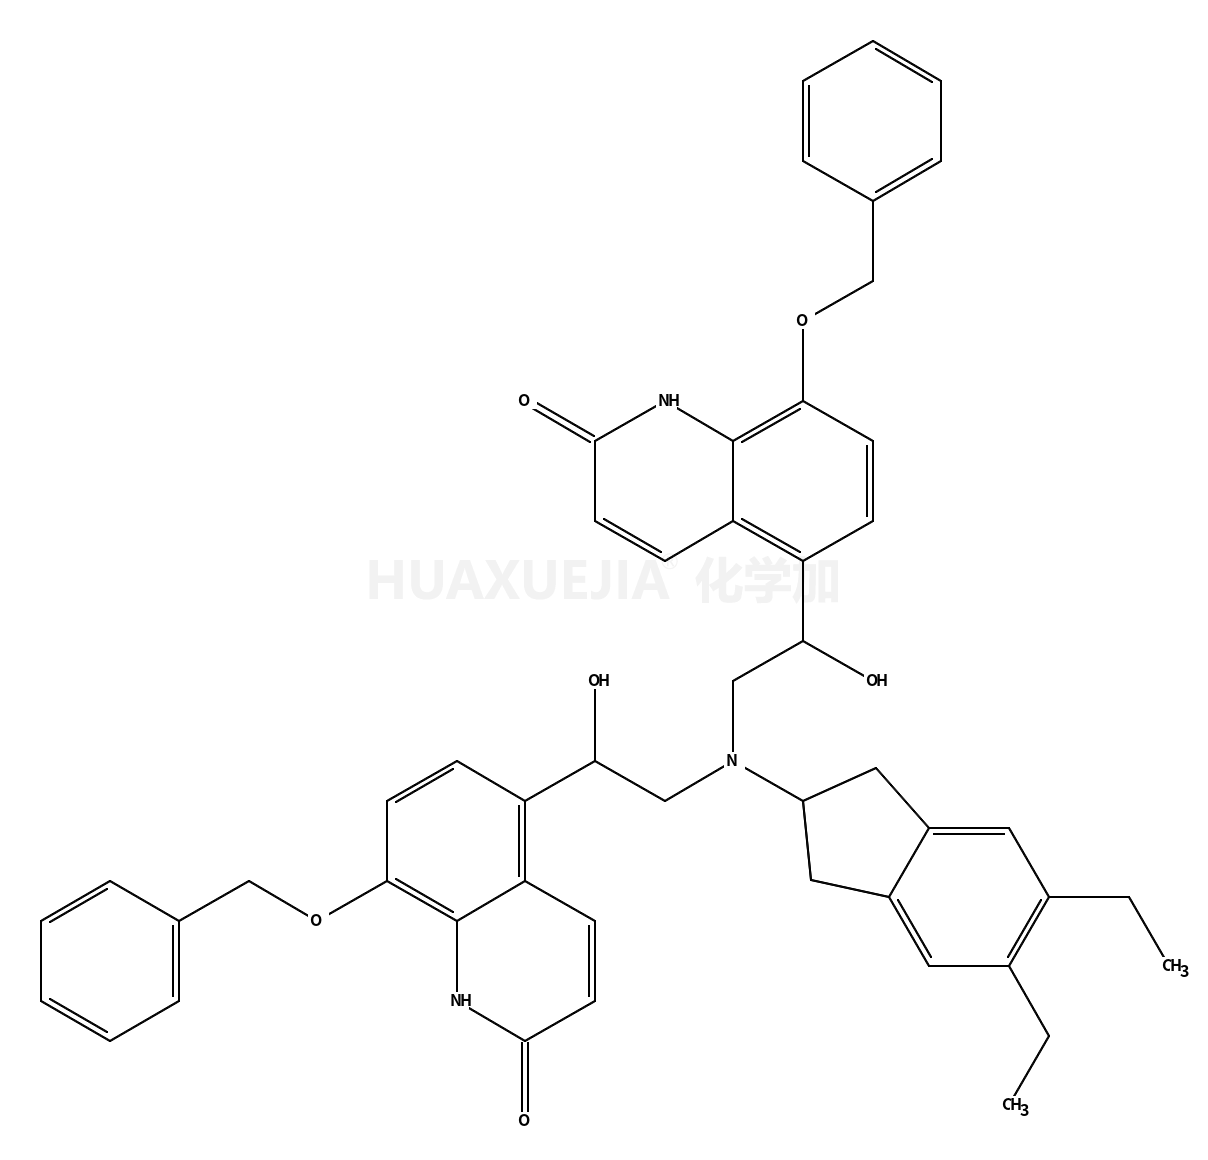 5,5'-(2,2'-(5,6-diethyl-2,3-dihydro-1H-inden-2-ylazanediyl)bis(1-hydroxyethane-2,1-diyl))bis(8-(benzyloxy)quinolin-2-(1H)-one)